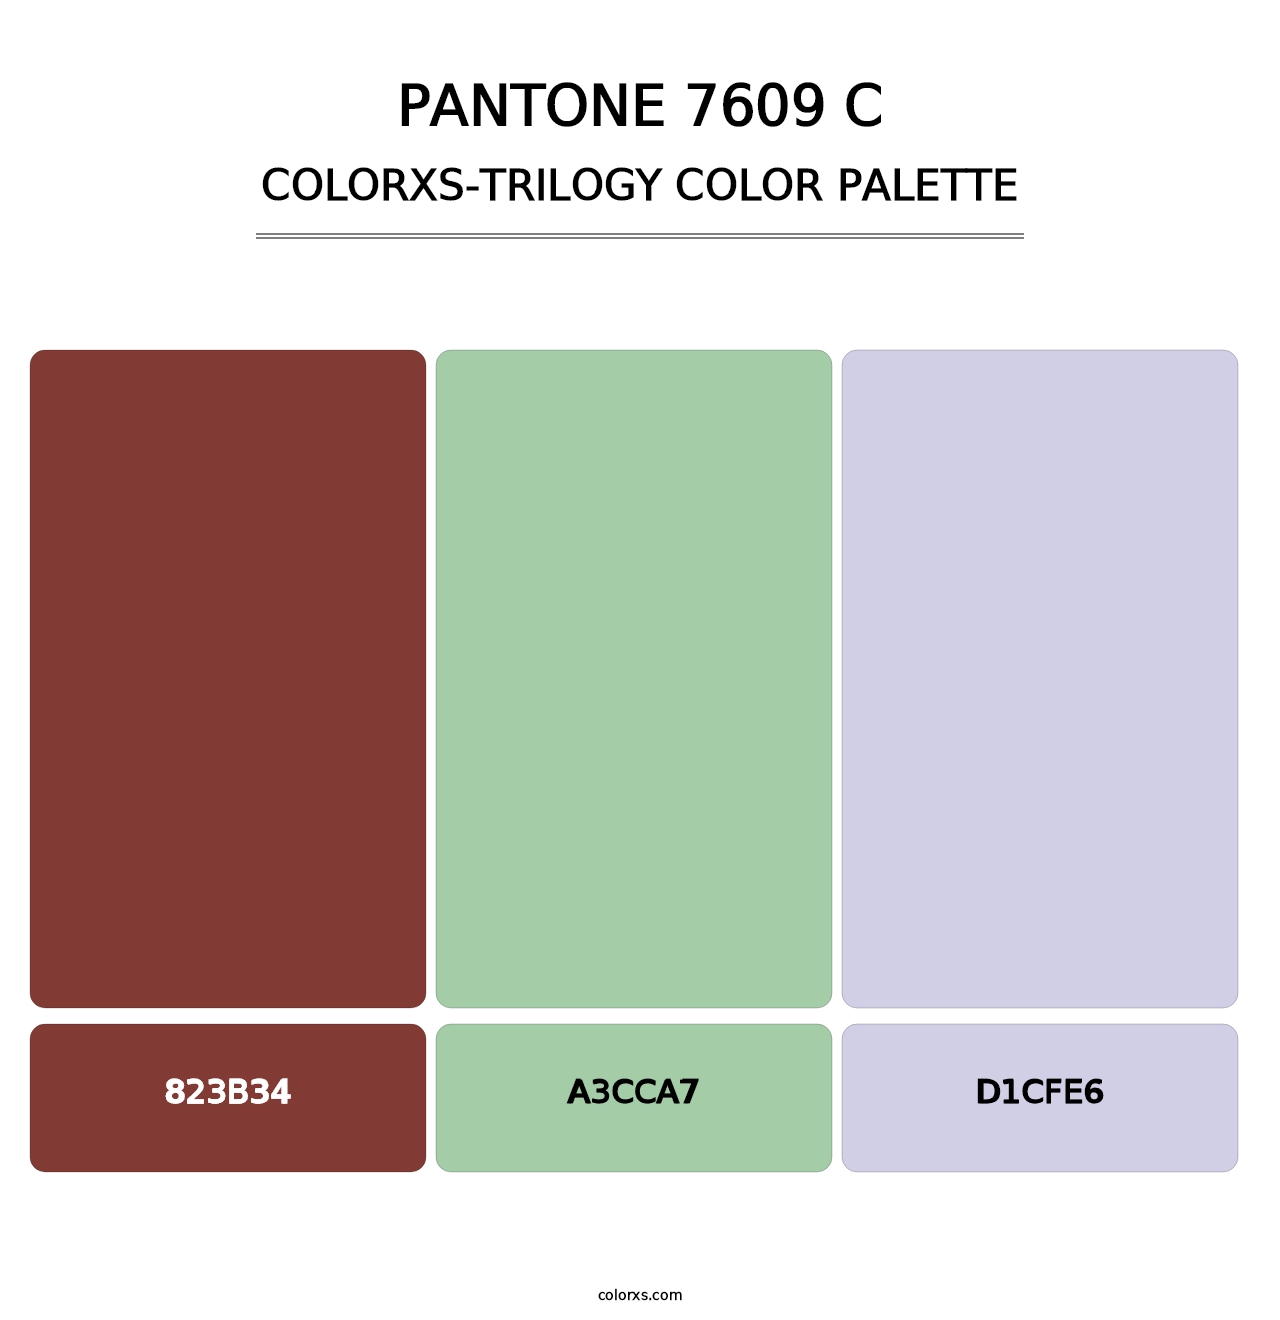 PANTONE 7609 C - Colorxs Trilogy Palette